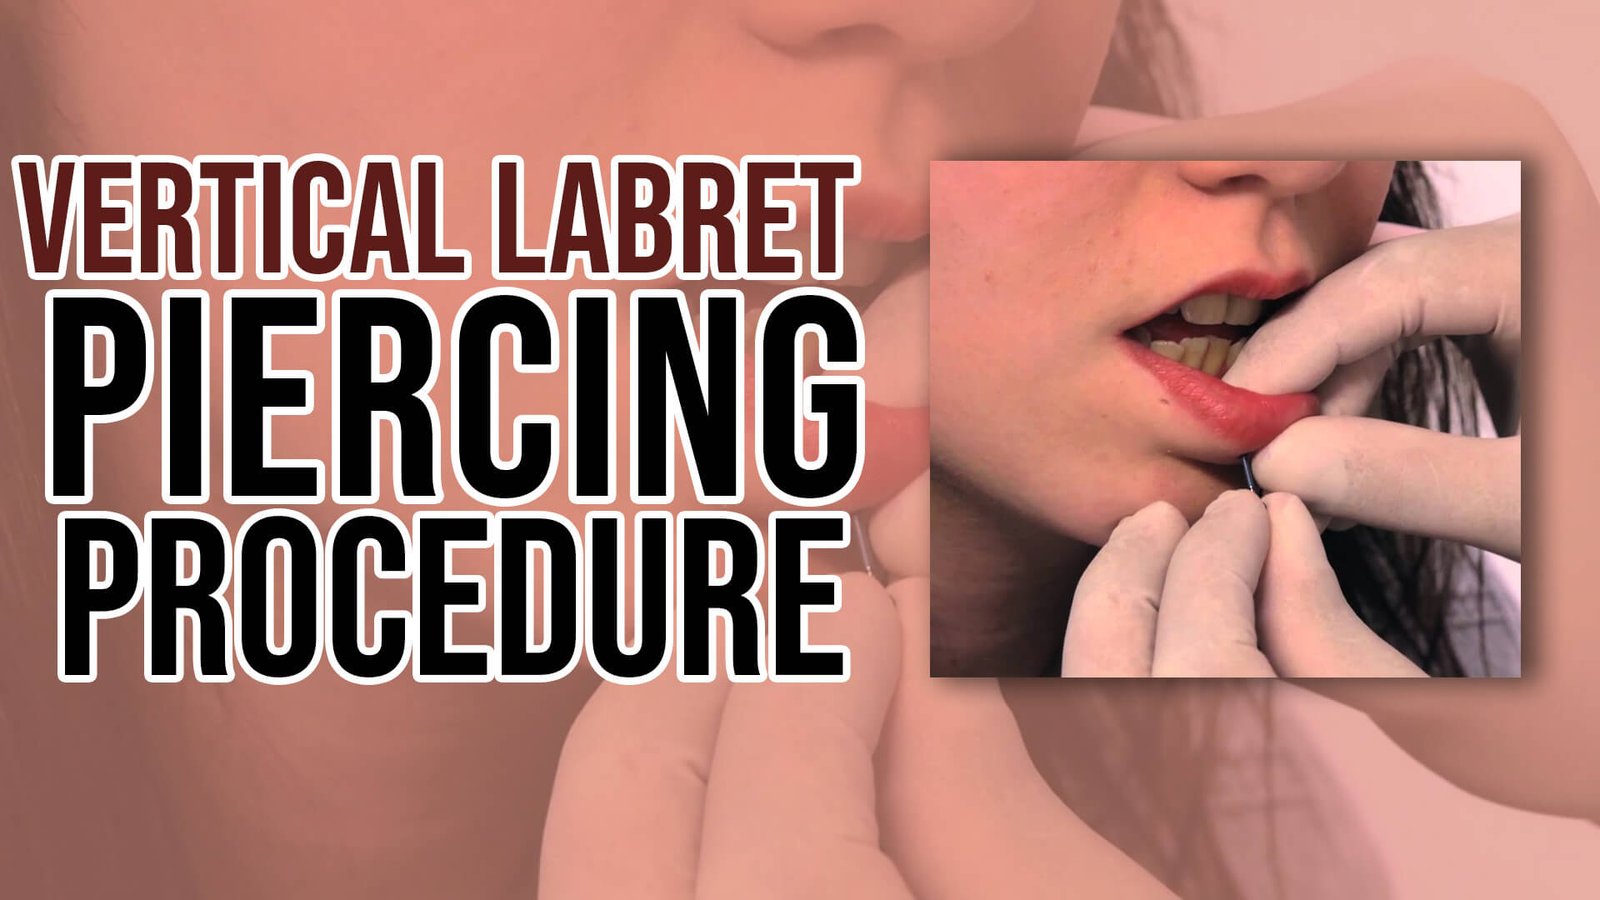 Vertical Labret Piercing Procedure